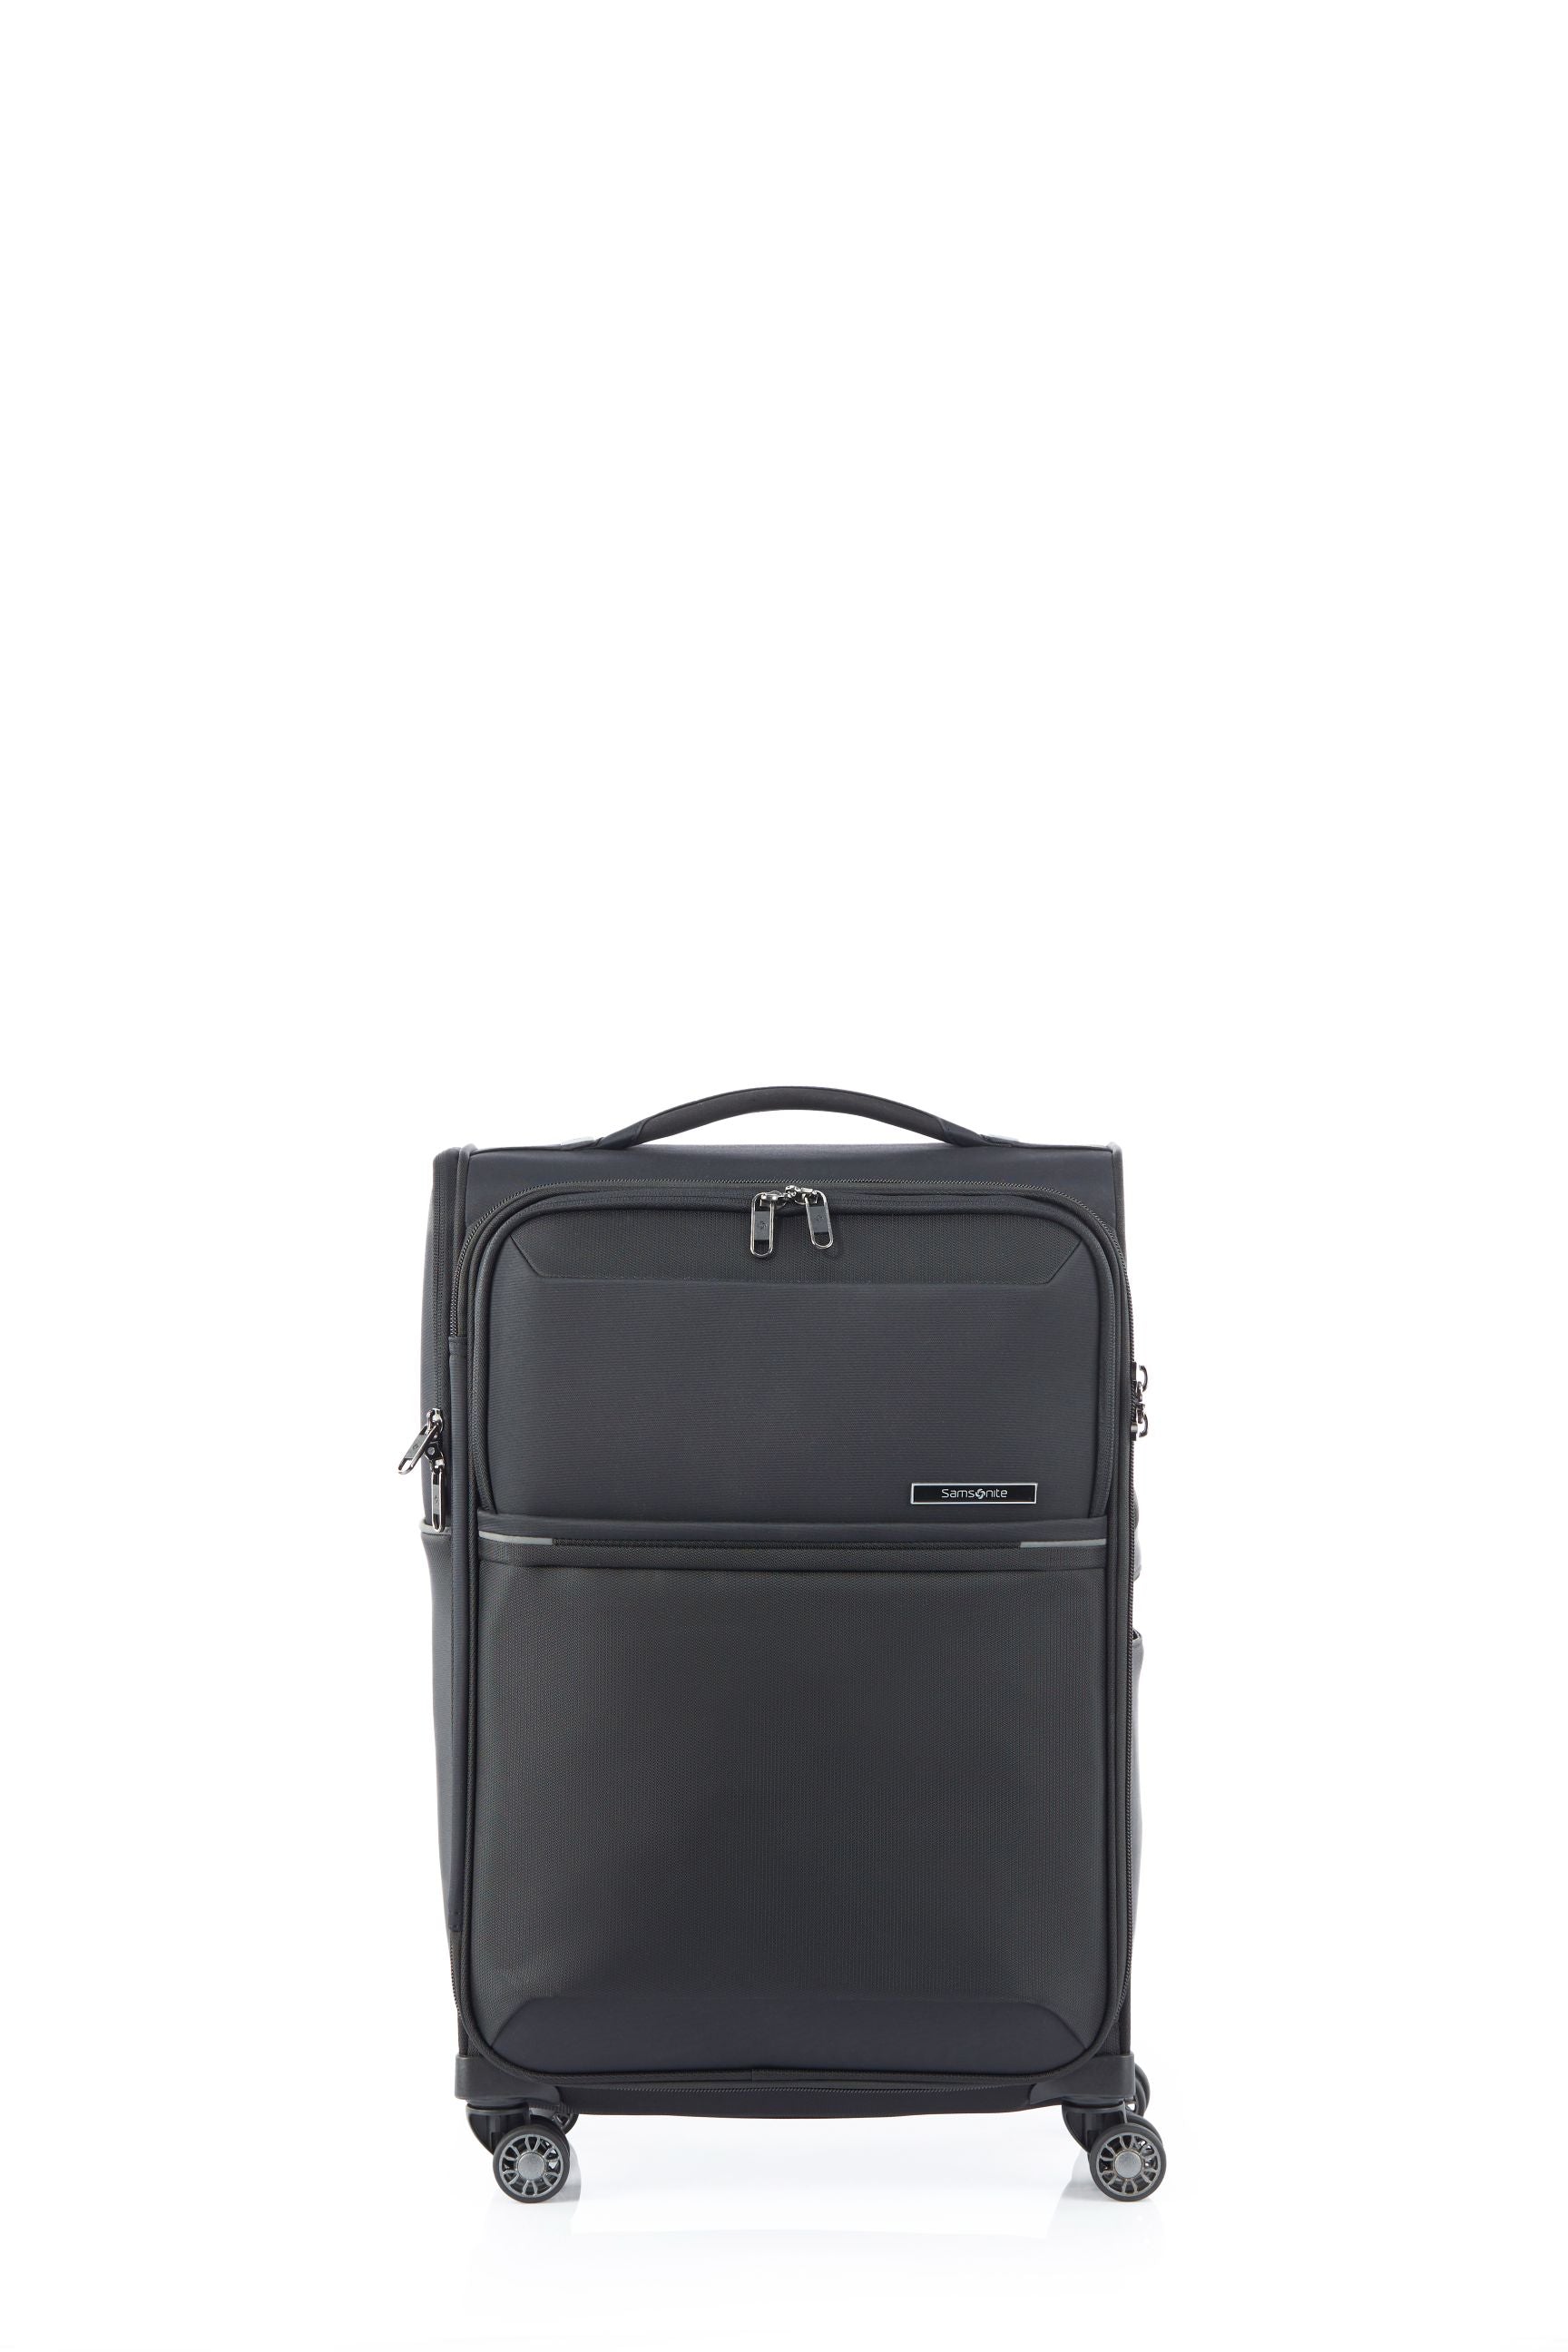 Samsonite - 73HR 55cm Small Suitcase - Black - 0